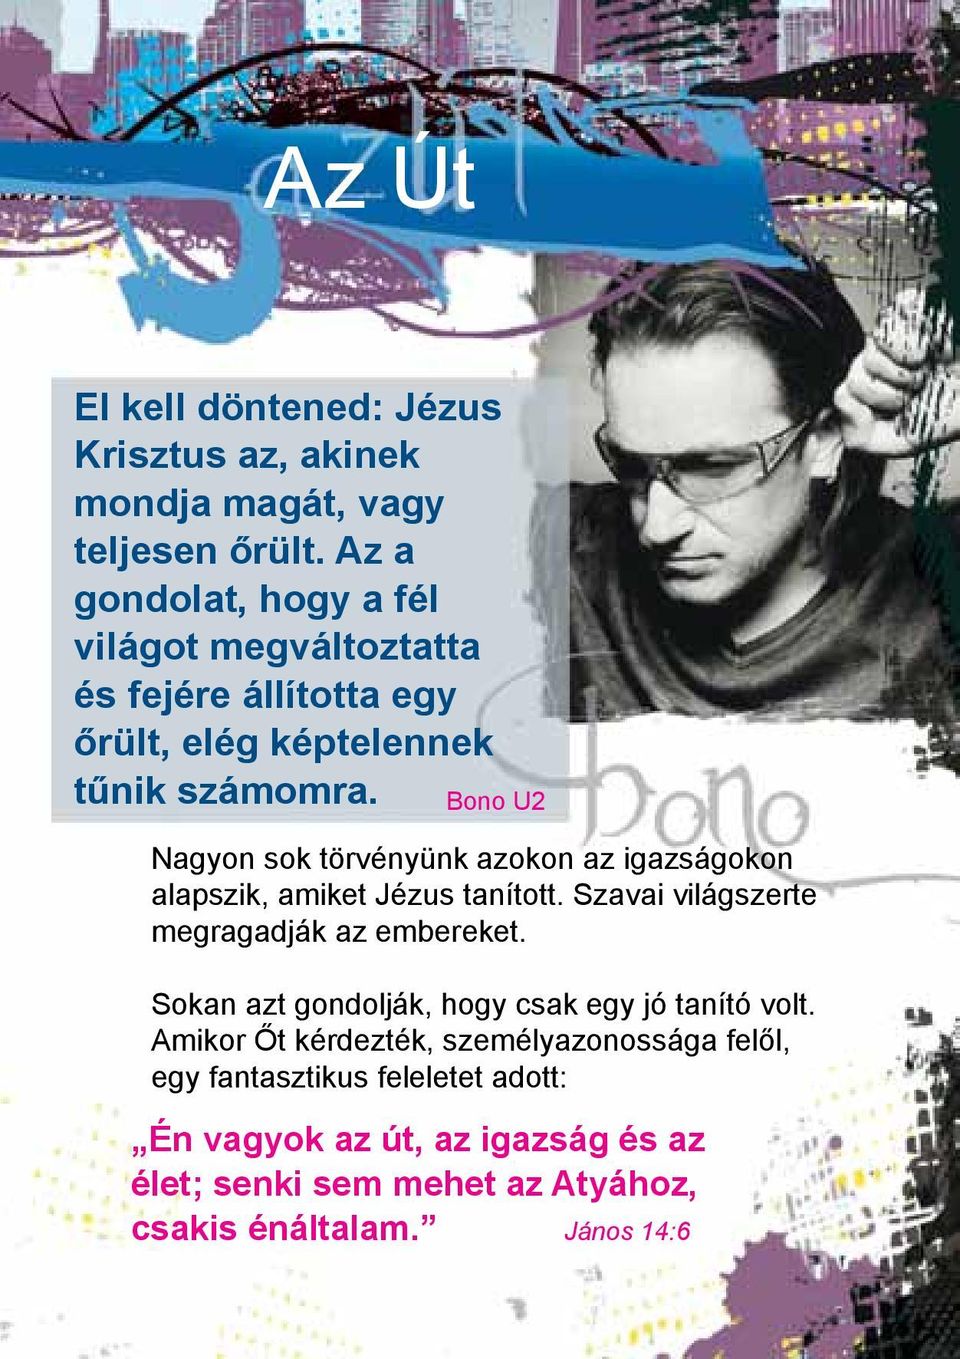 Bono U2 Nagyon sok törvényünk azokon az igazságokon alapszik, amiket Jézus tanított. Szavai világszerte megragadják az embereket.